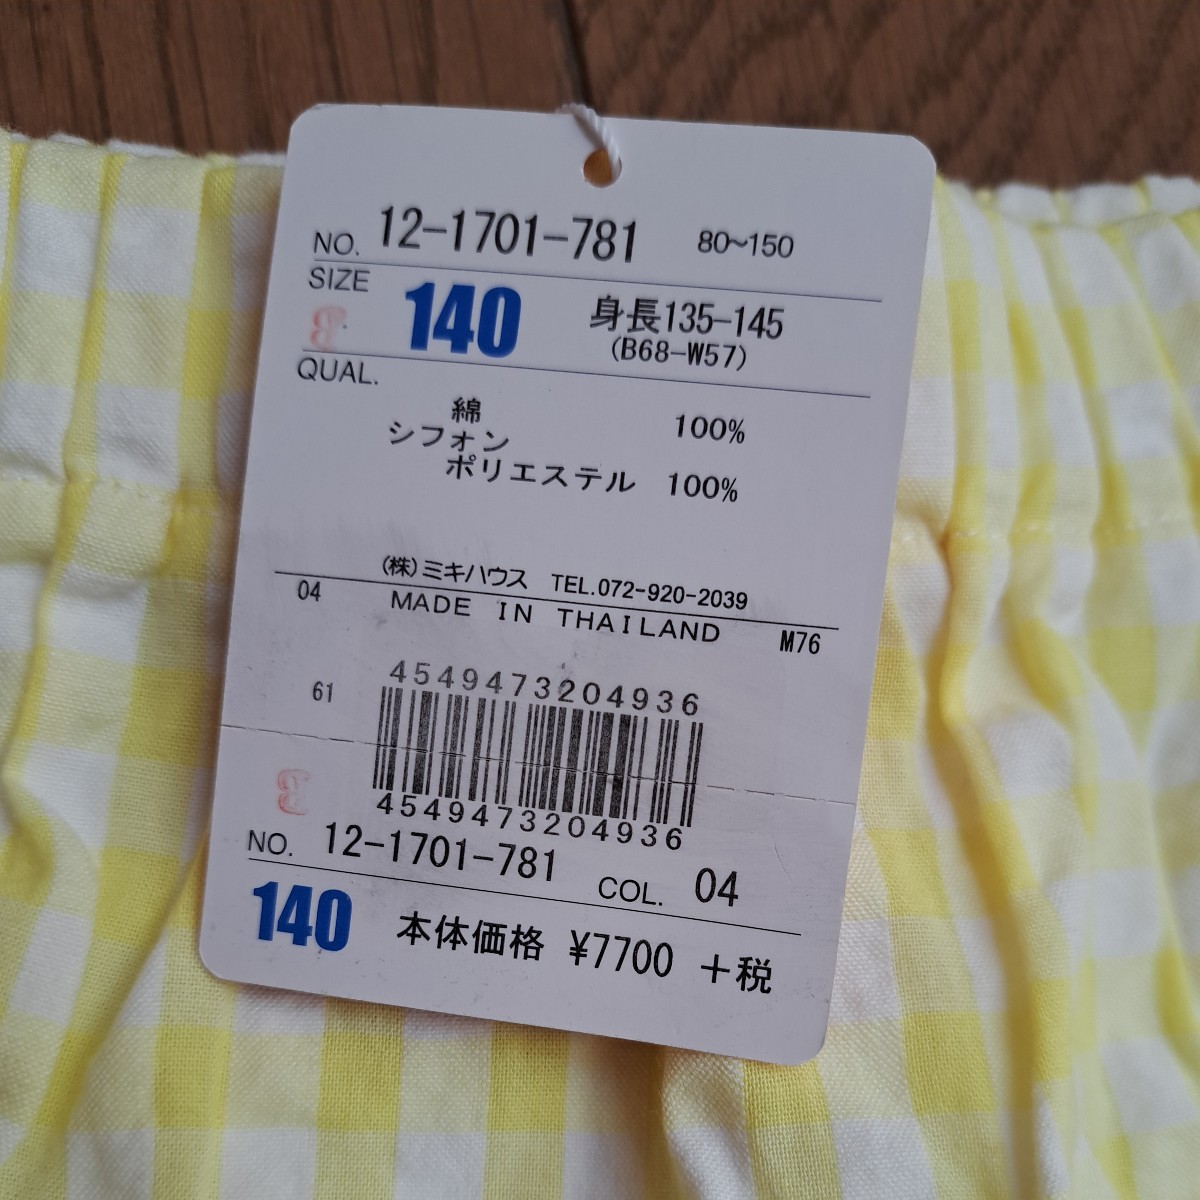 ⑬  новый товар 　140cm　 рекомендуемая розничная цена 8570  йен 　...　 шорты  　... юбка 　...　...